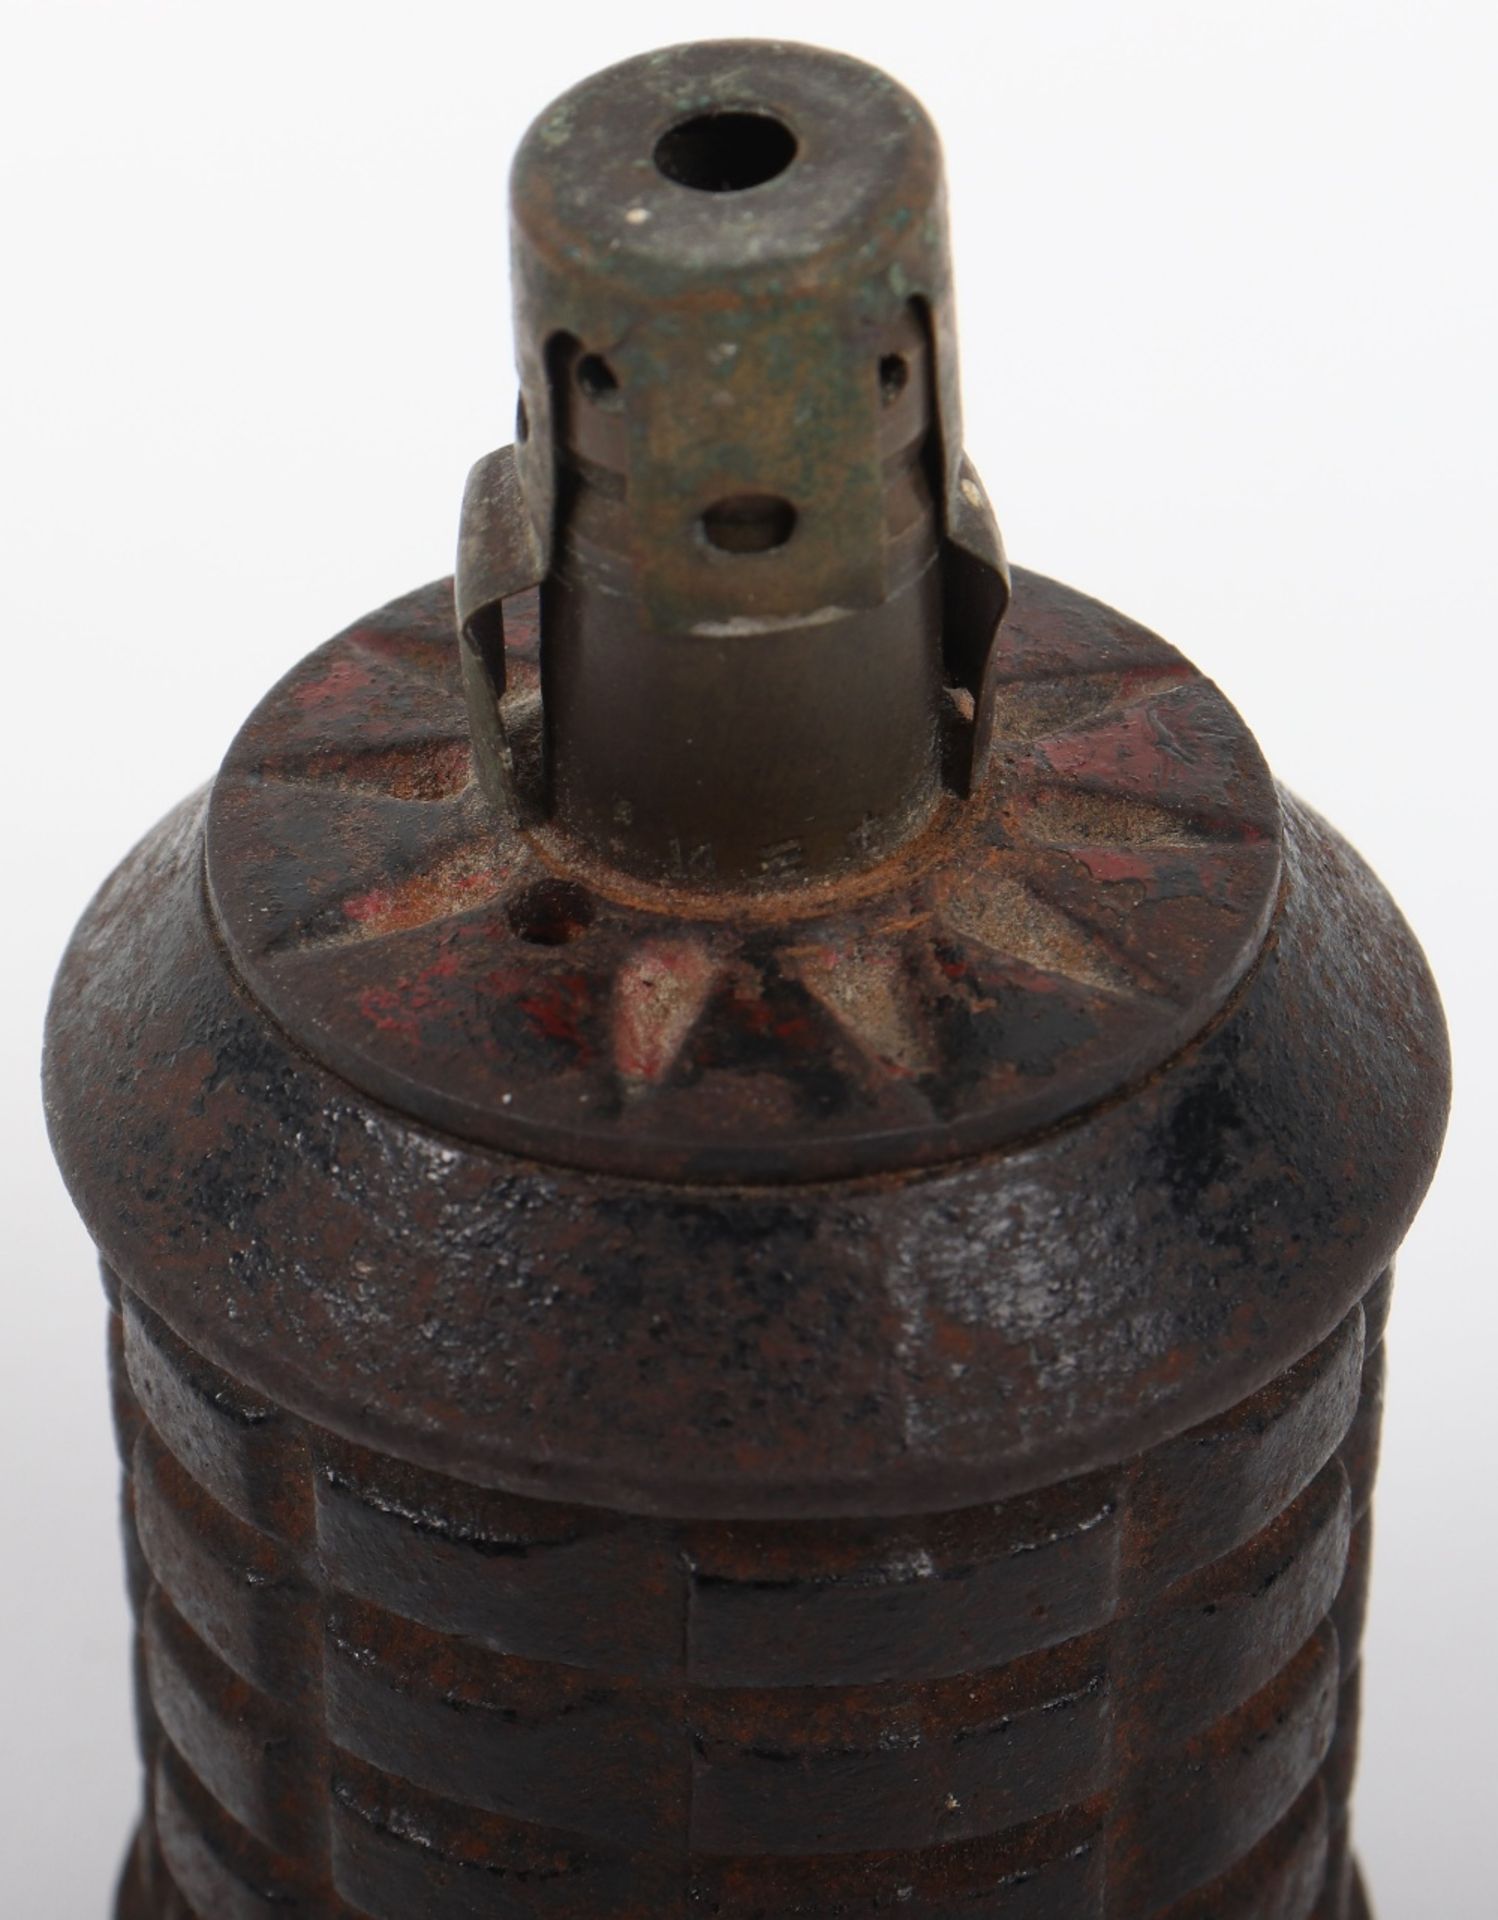 Inert WW2 Japanese Type 97 Hand Grenade - Image 3 of 5